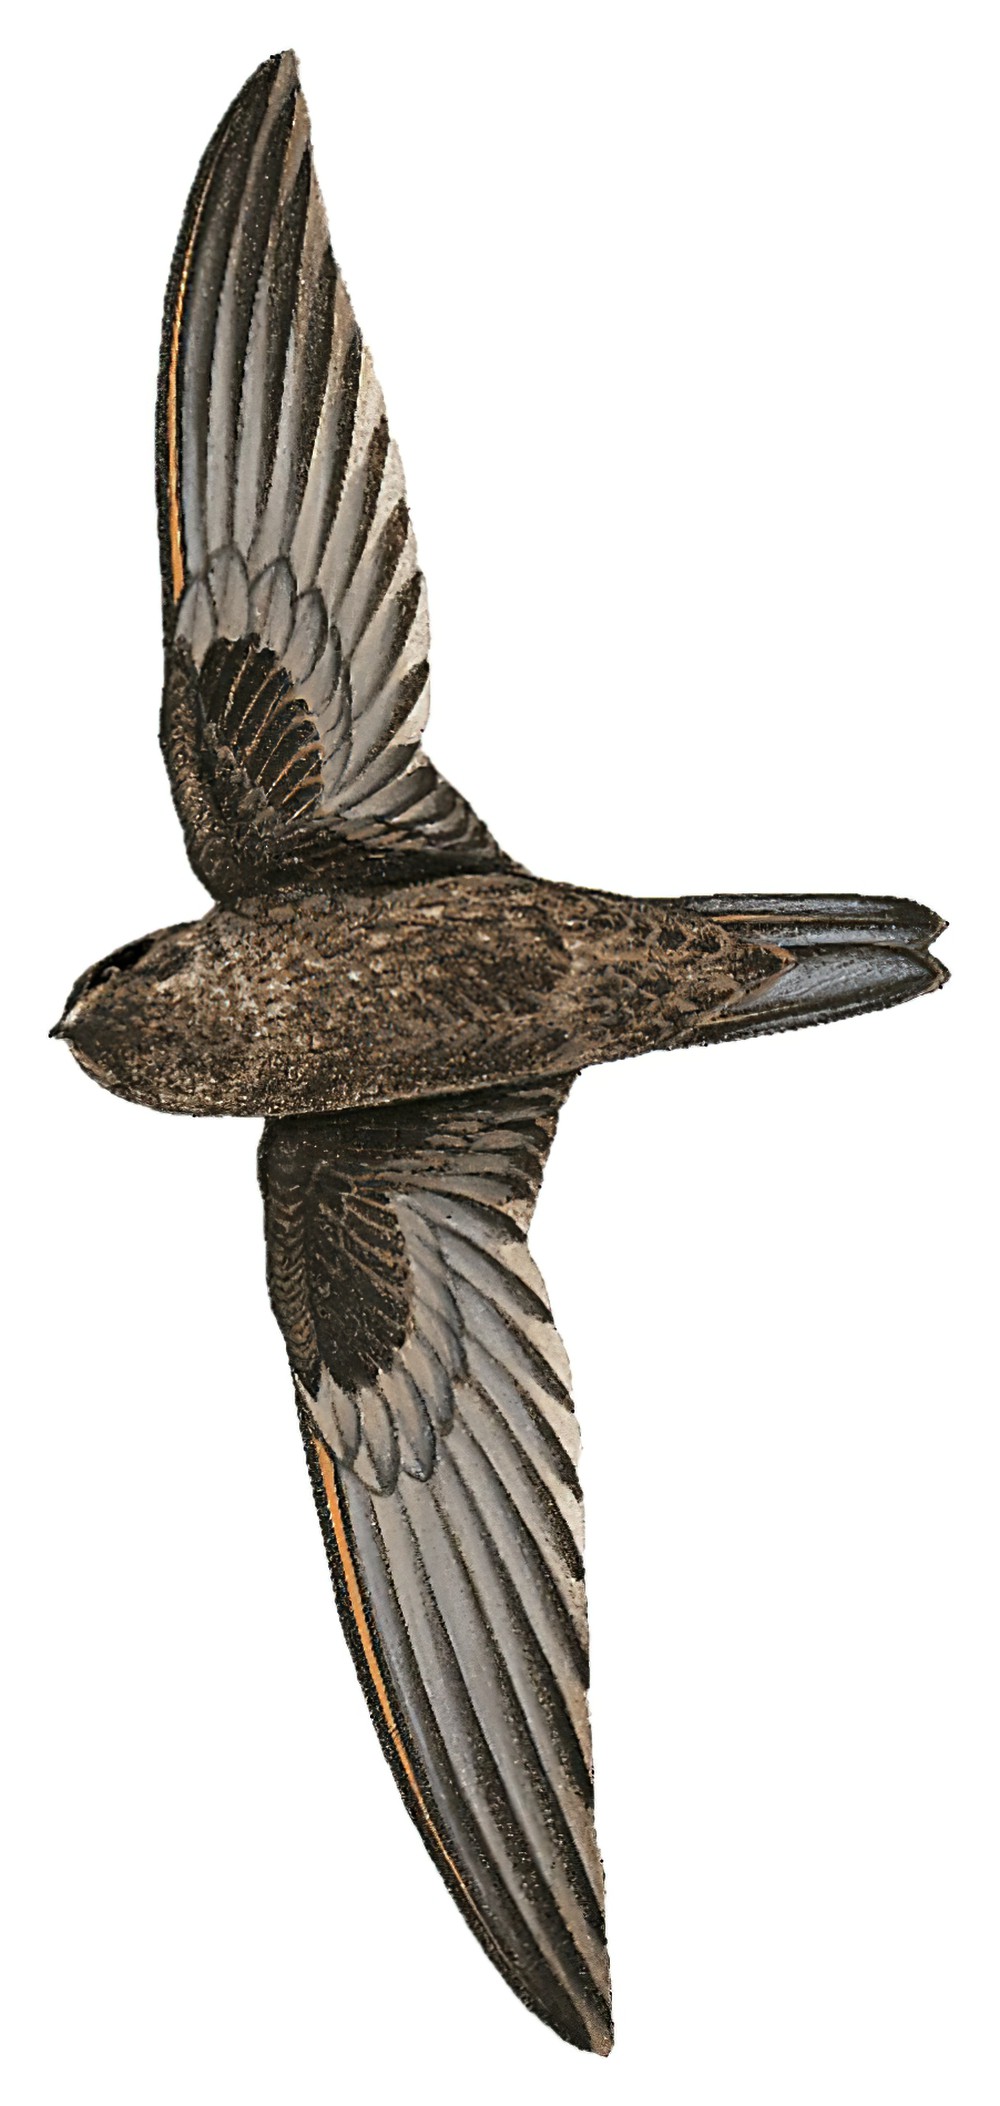 Caroline Islands Swiftlet / Aerodramus inquietus